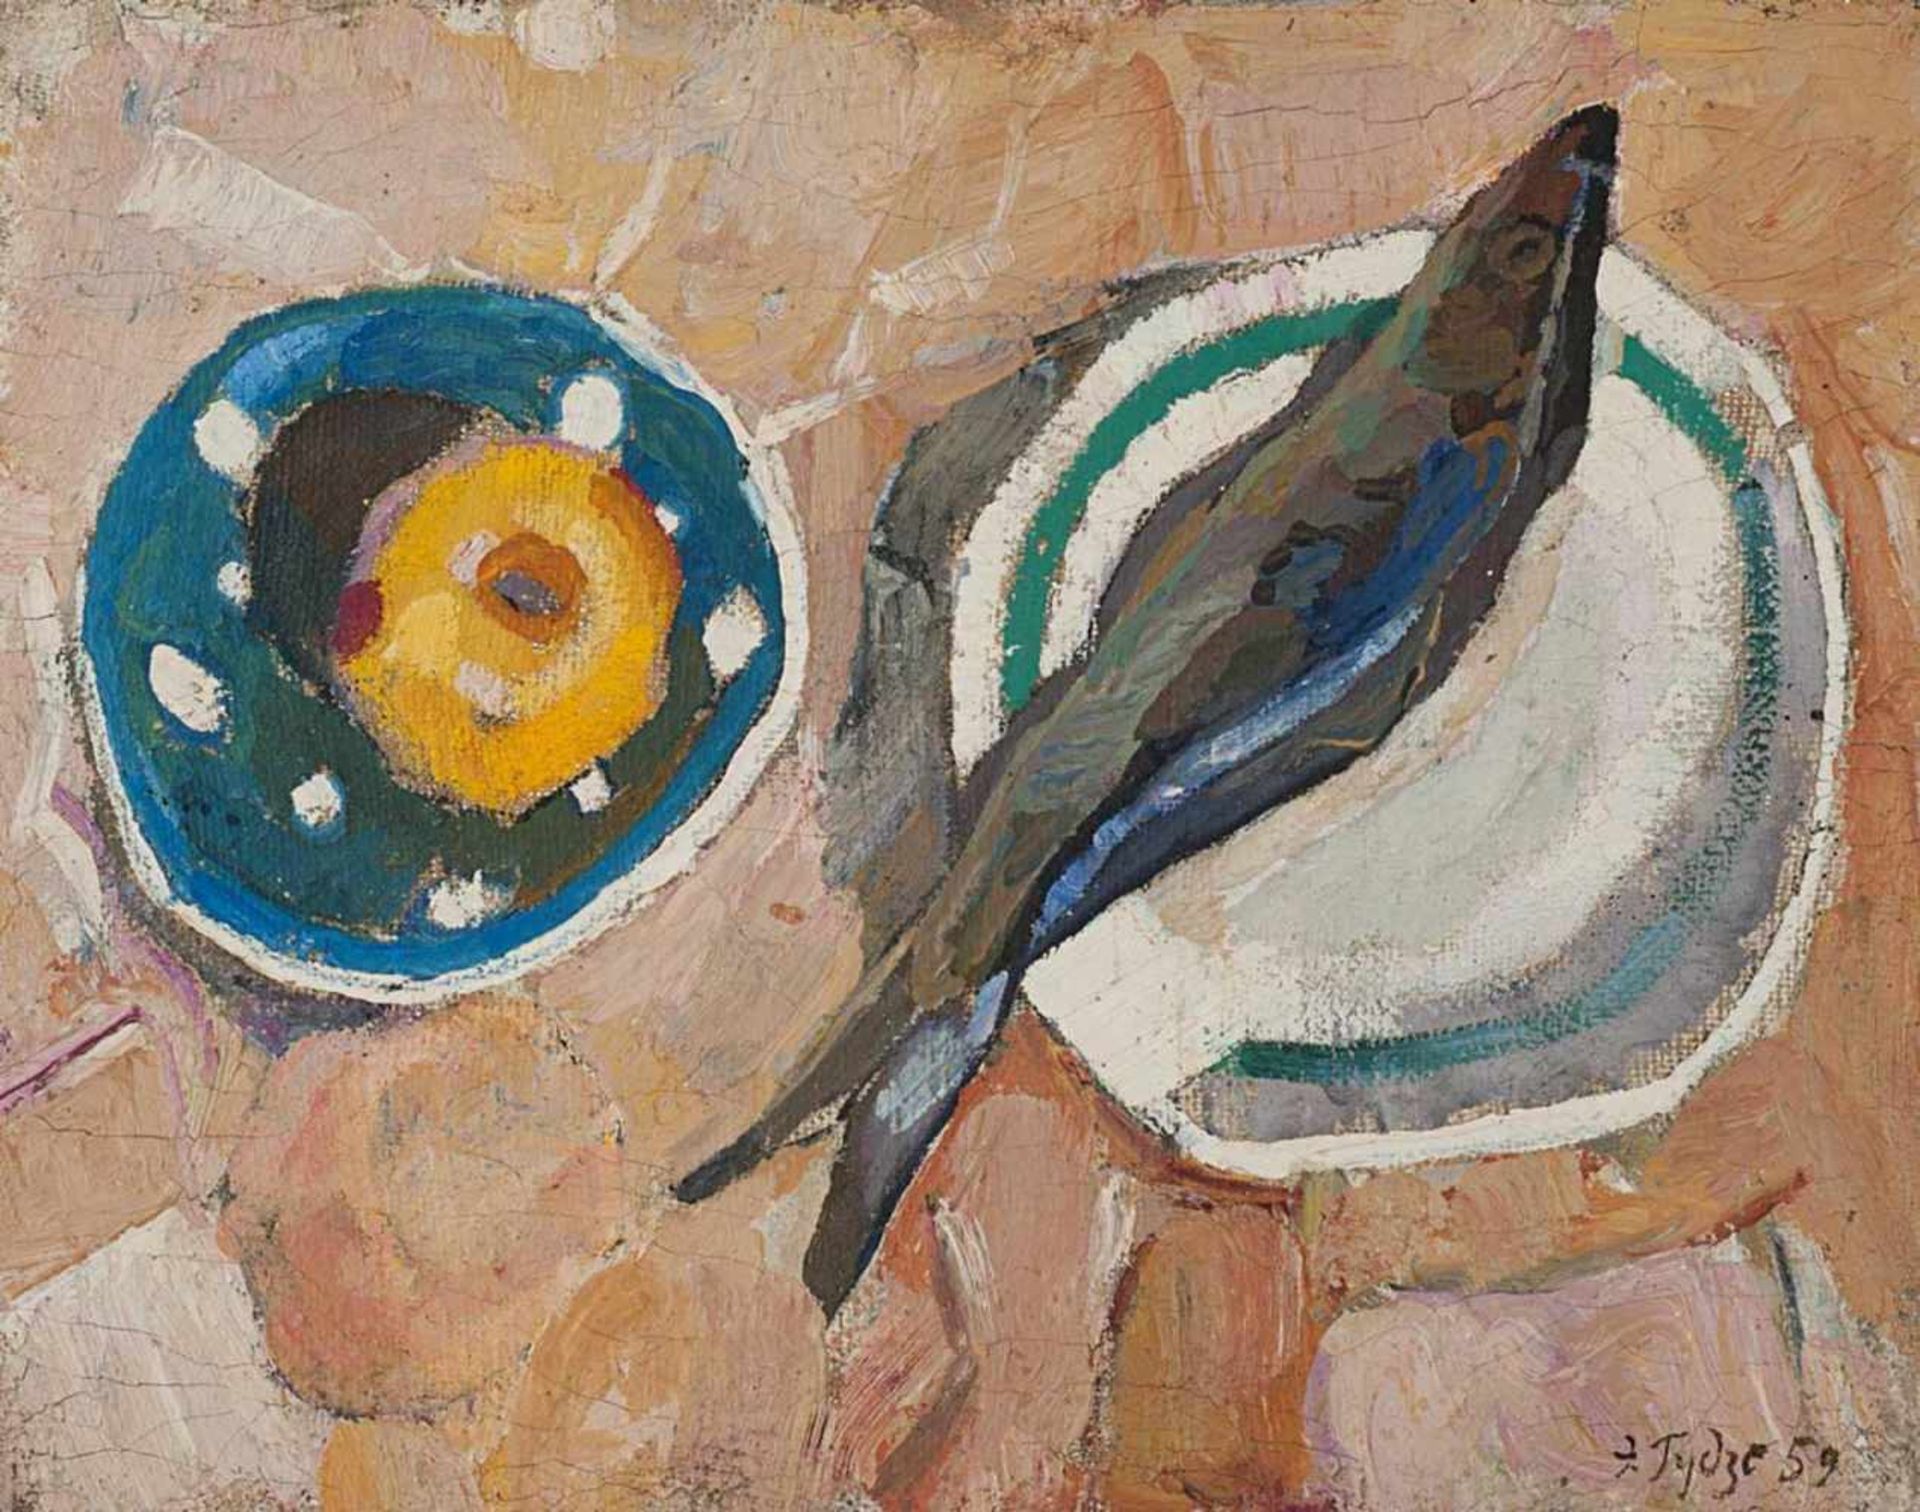 Gudzenko, Eduard. "Still life with herring". 1959.Oil on canvas. Framed. 39x51 cm.